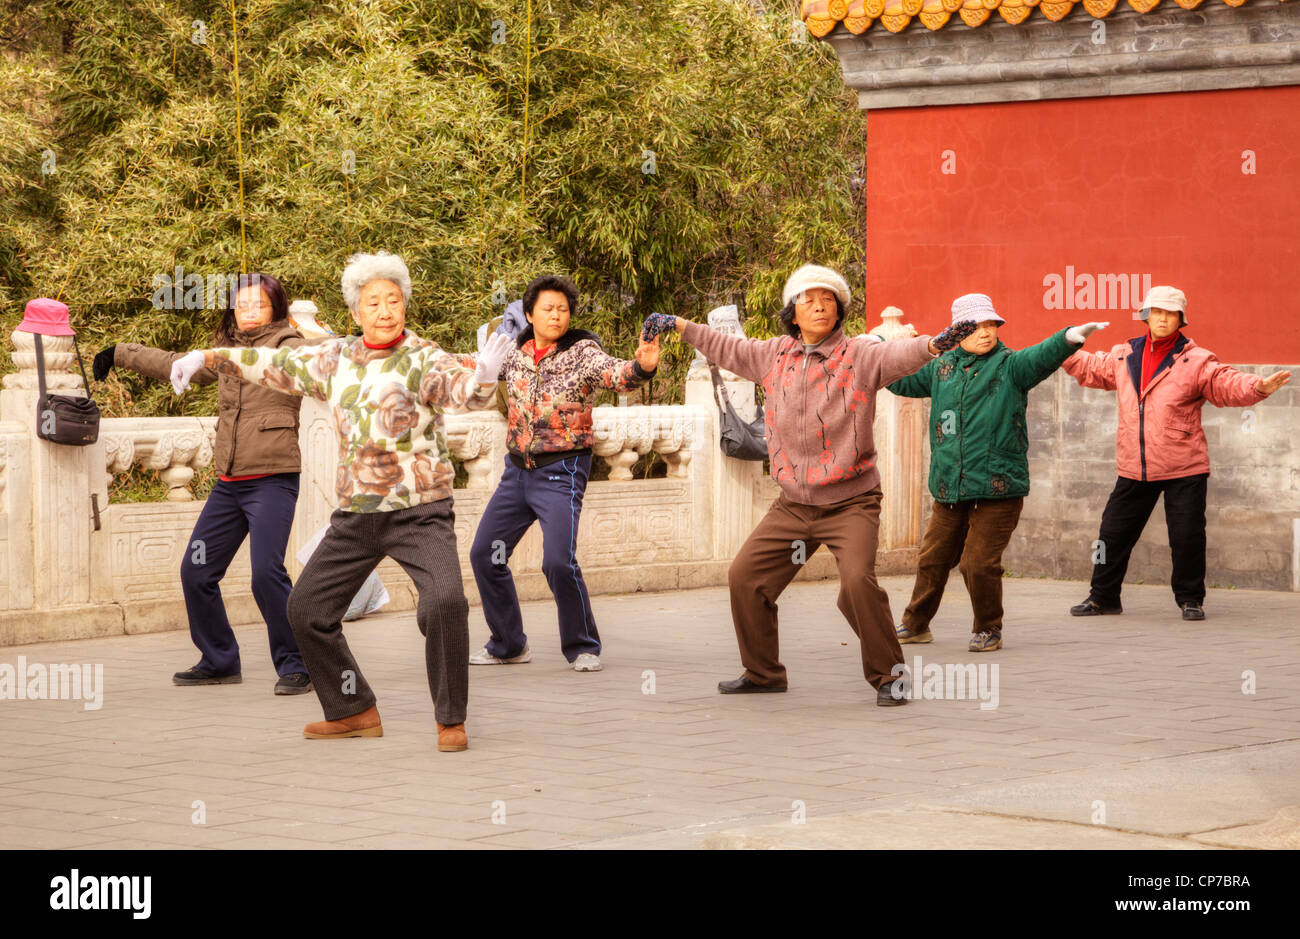 Groupe de femmes effectuant le tai chi ou tai chi en plein air au parc Jingshan, Beijing. Banque D'Images